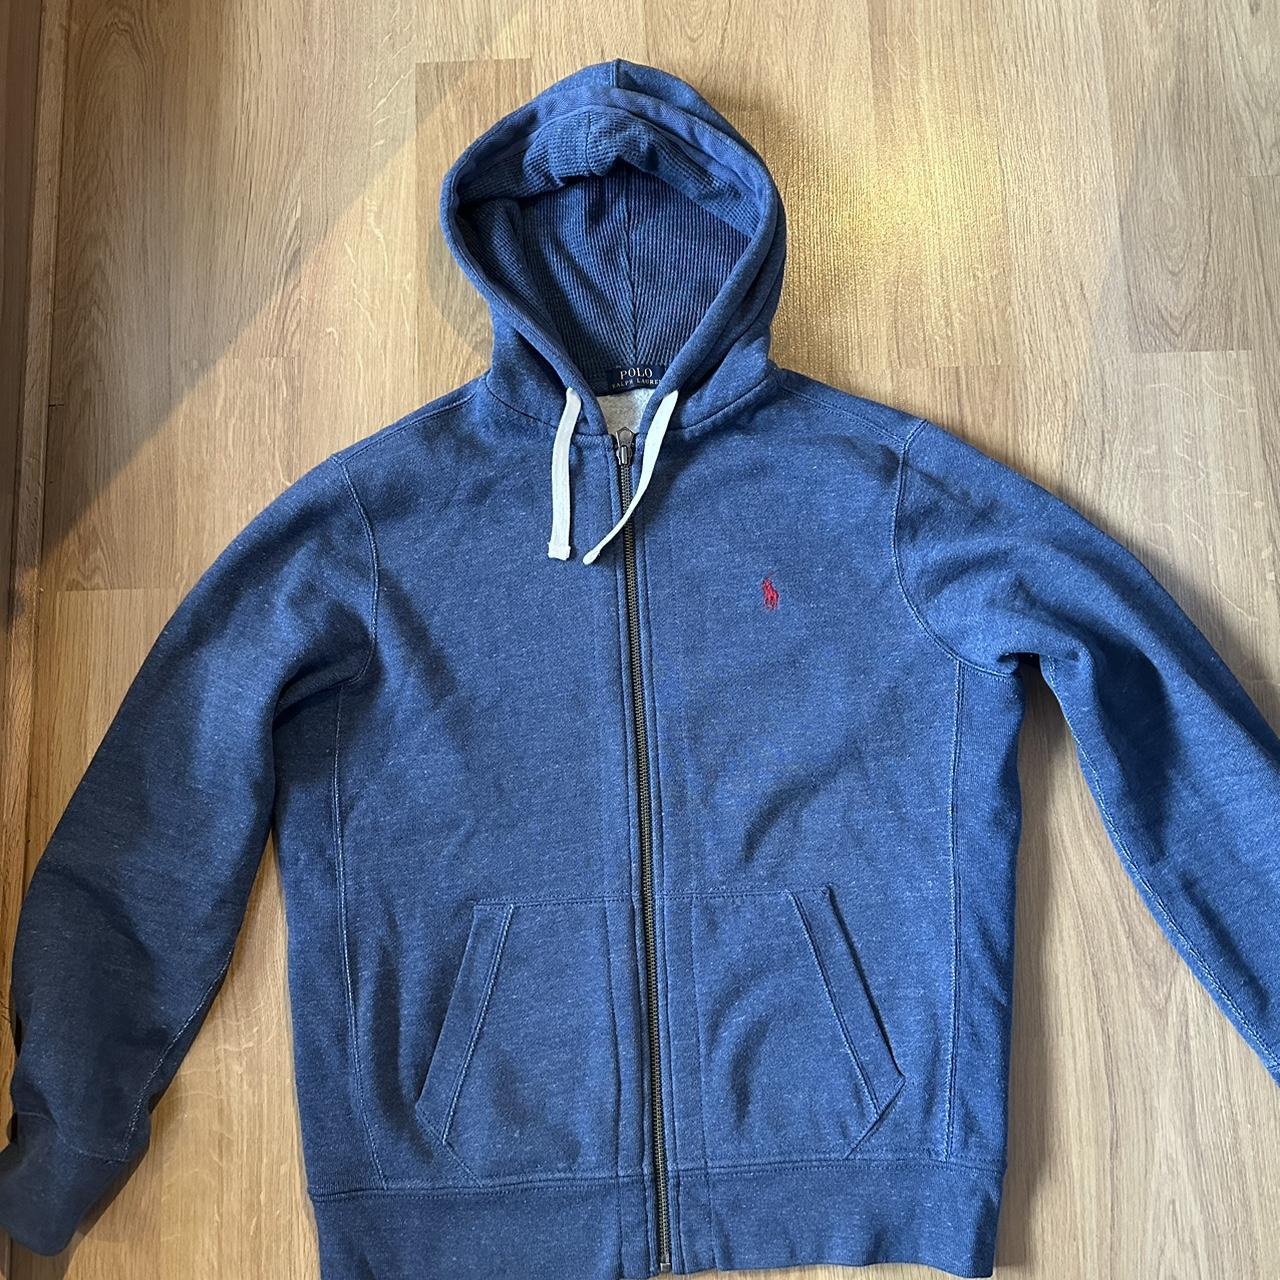 Polo Ralph Lauren zip hoodie Navy blue denim colour... - Depop